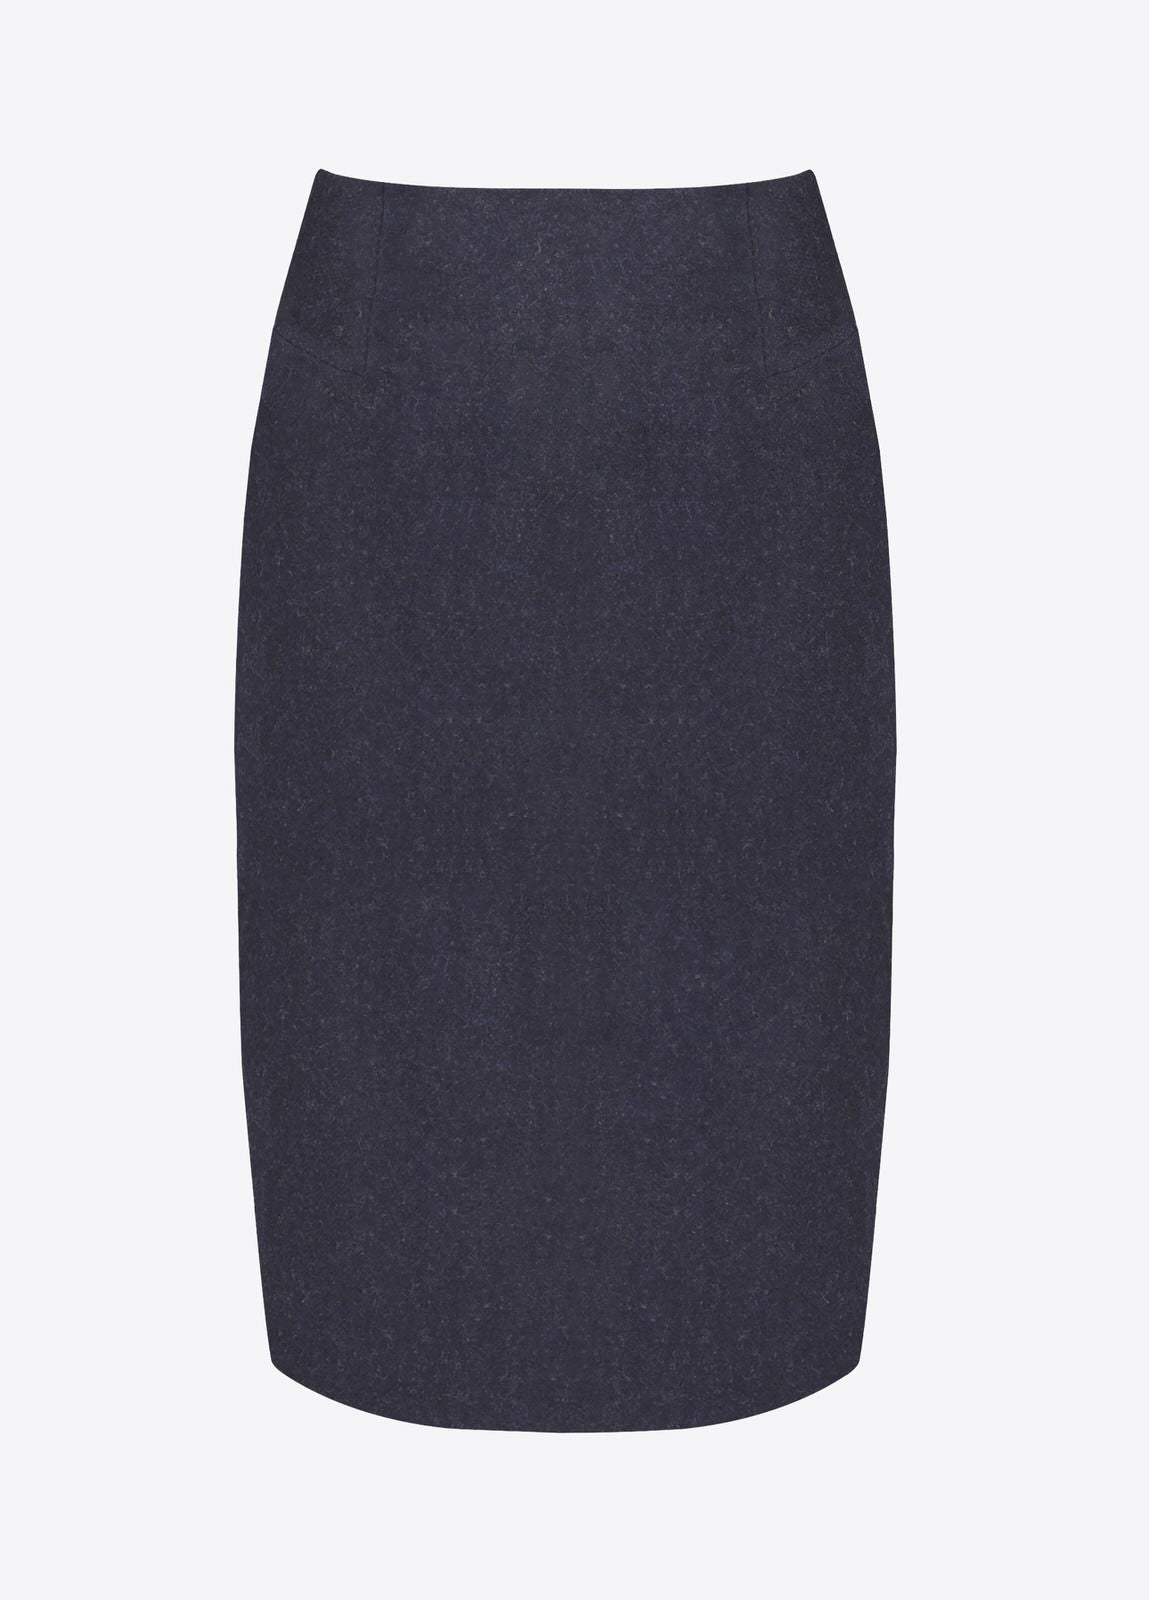 Fern Tweed Skirt - Navy